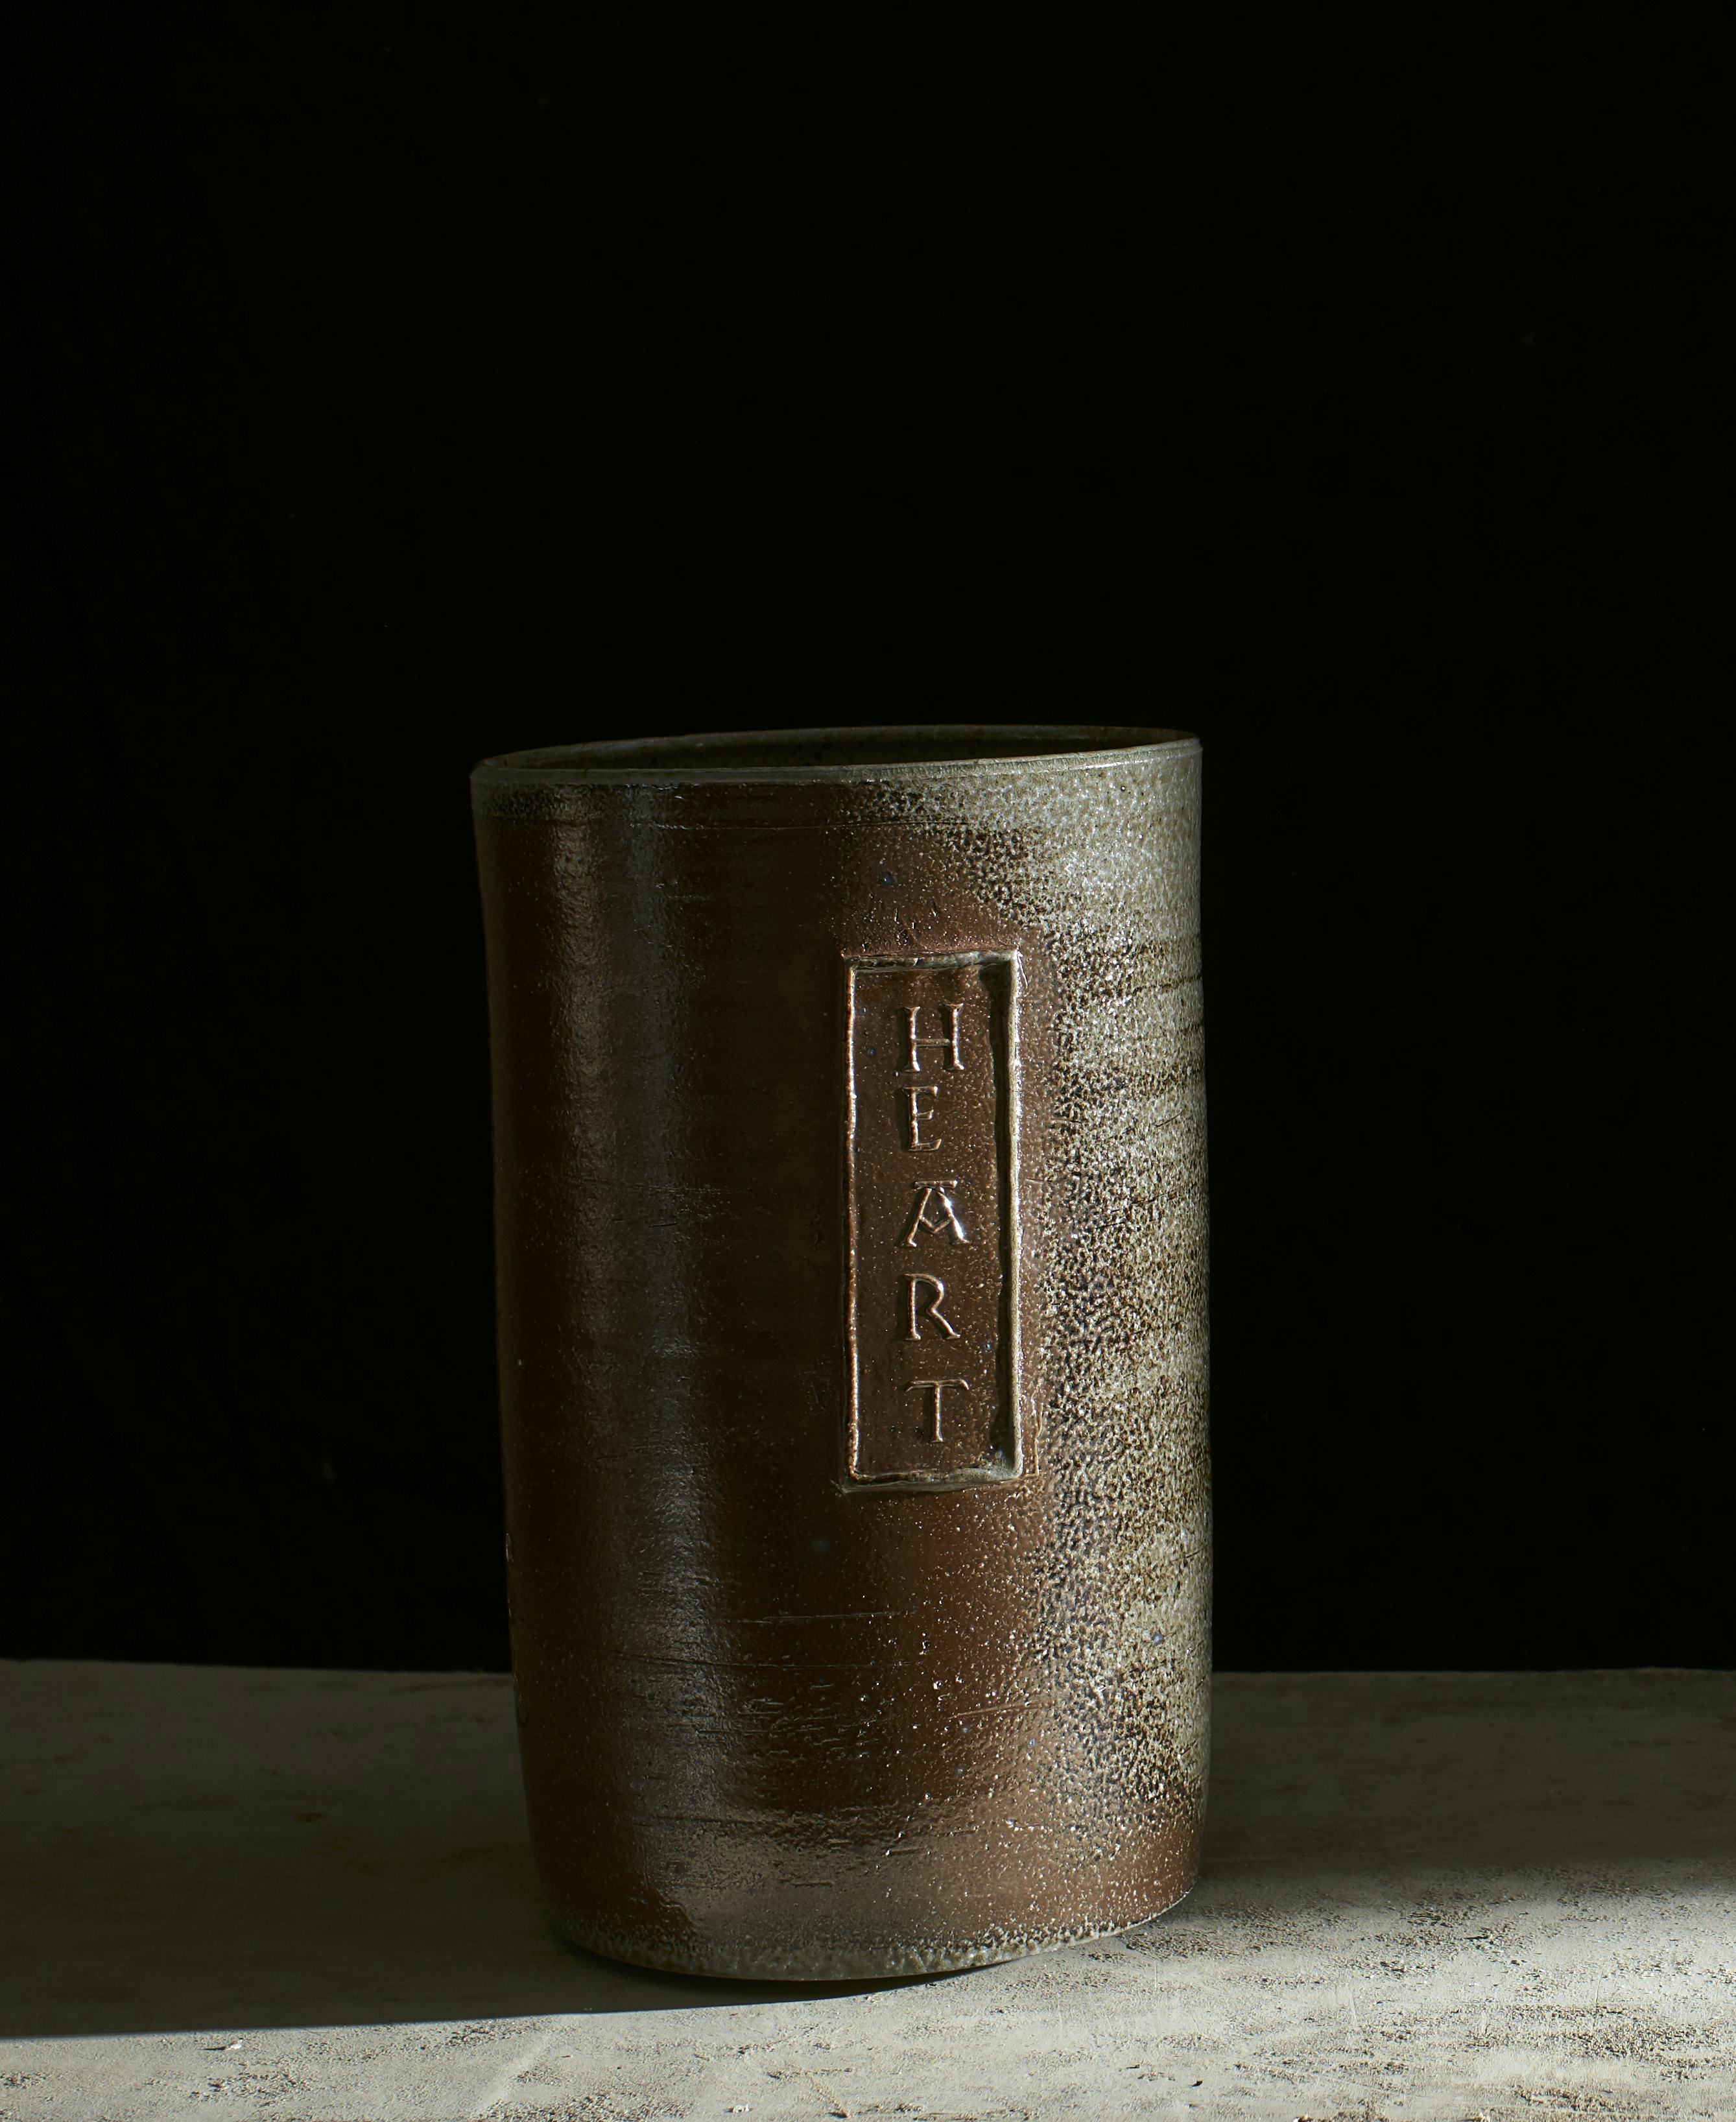 Salt glazed ceramic pot with text